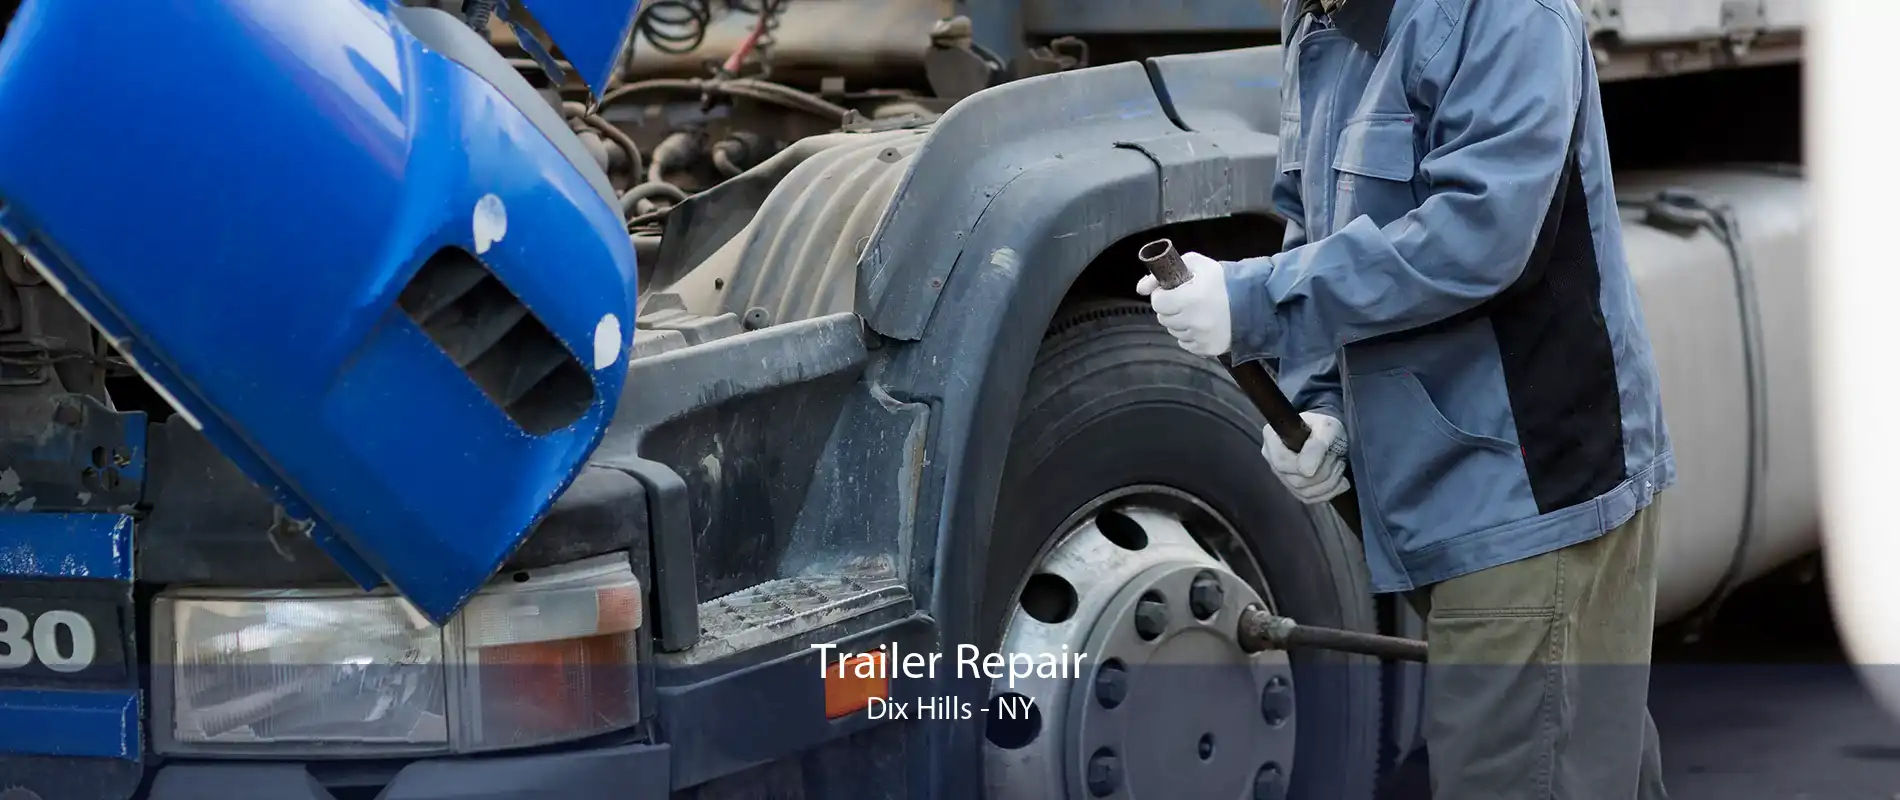 Trailer Repair Dix Hills - NY